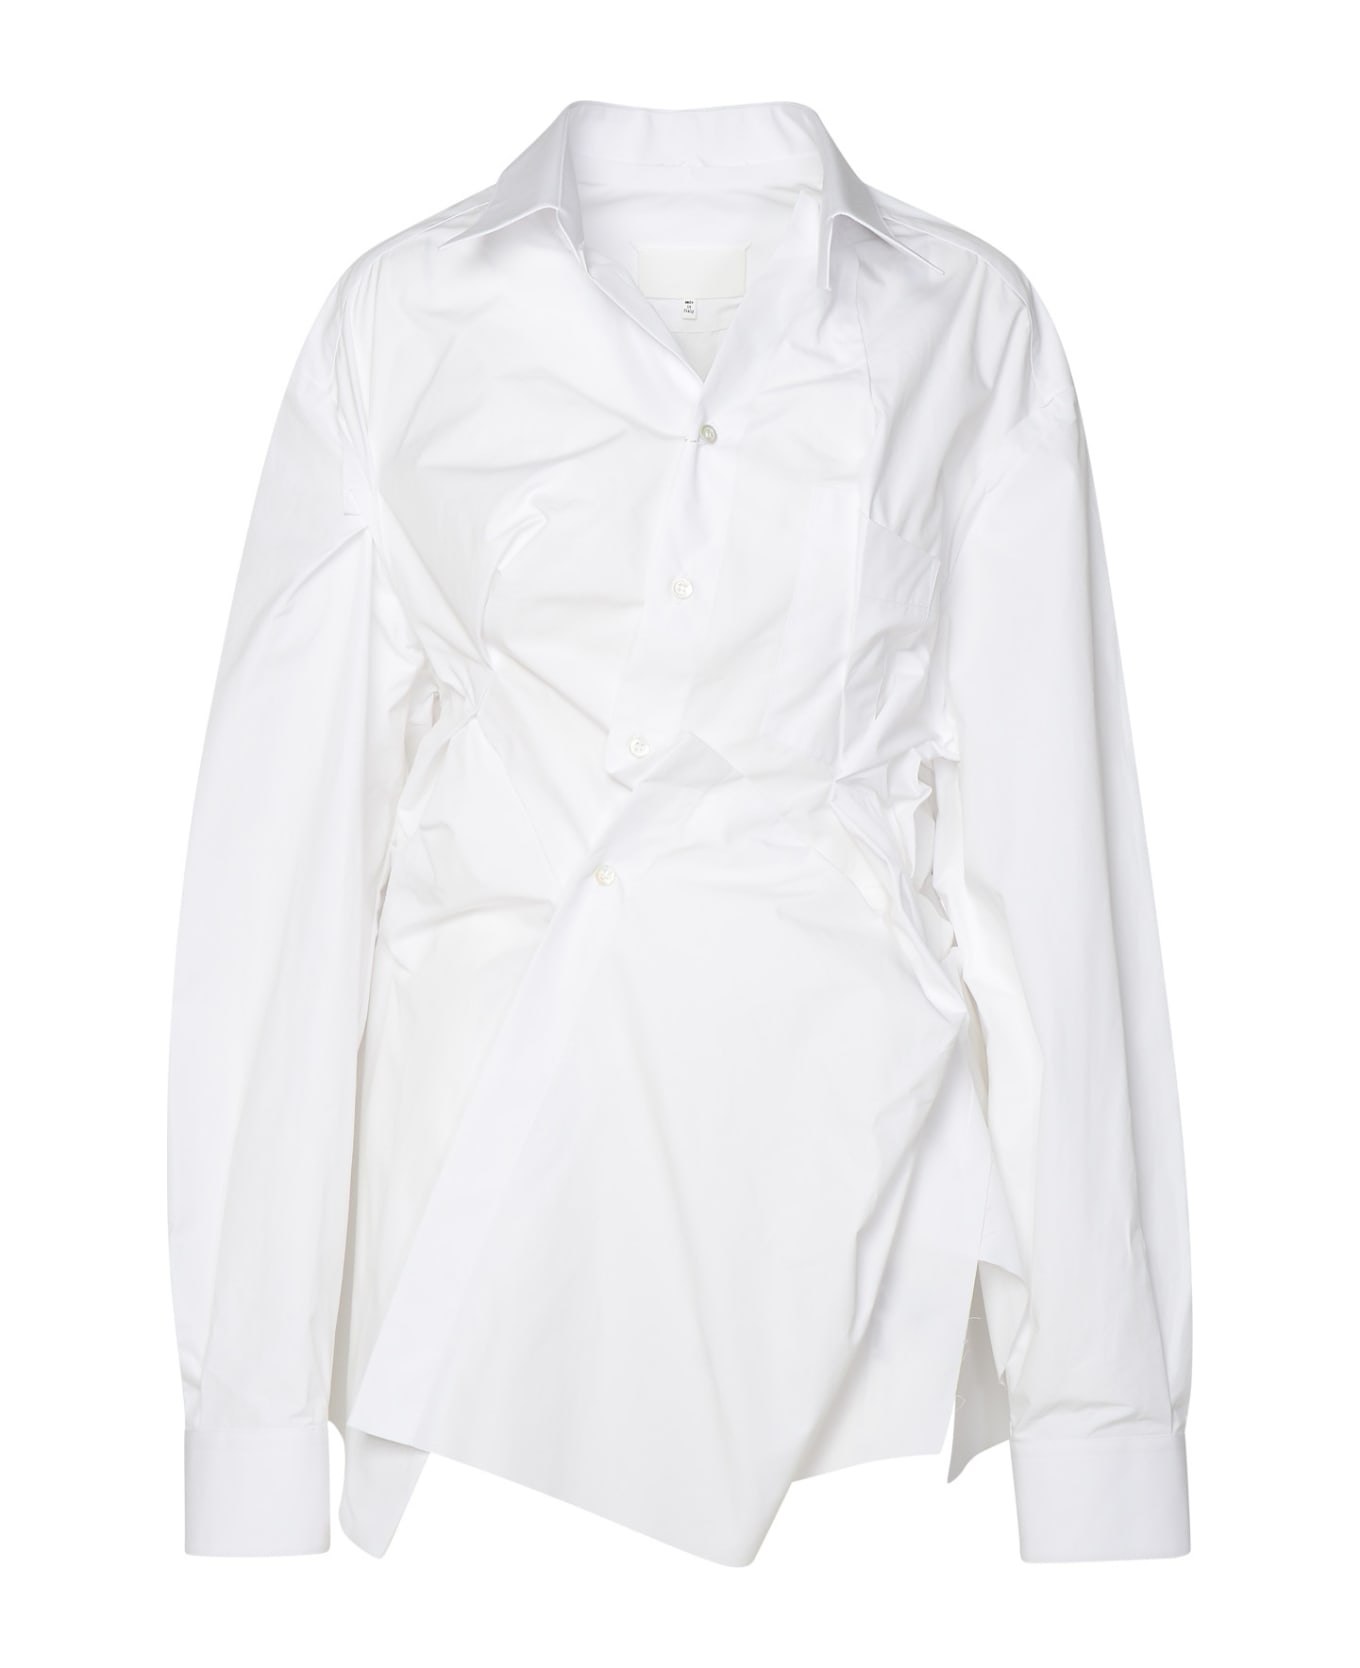 Maison Margiela White Cotton Shirt - White